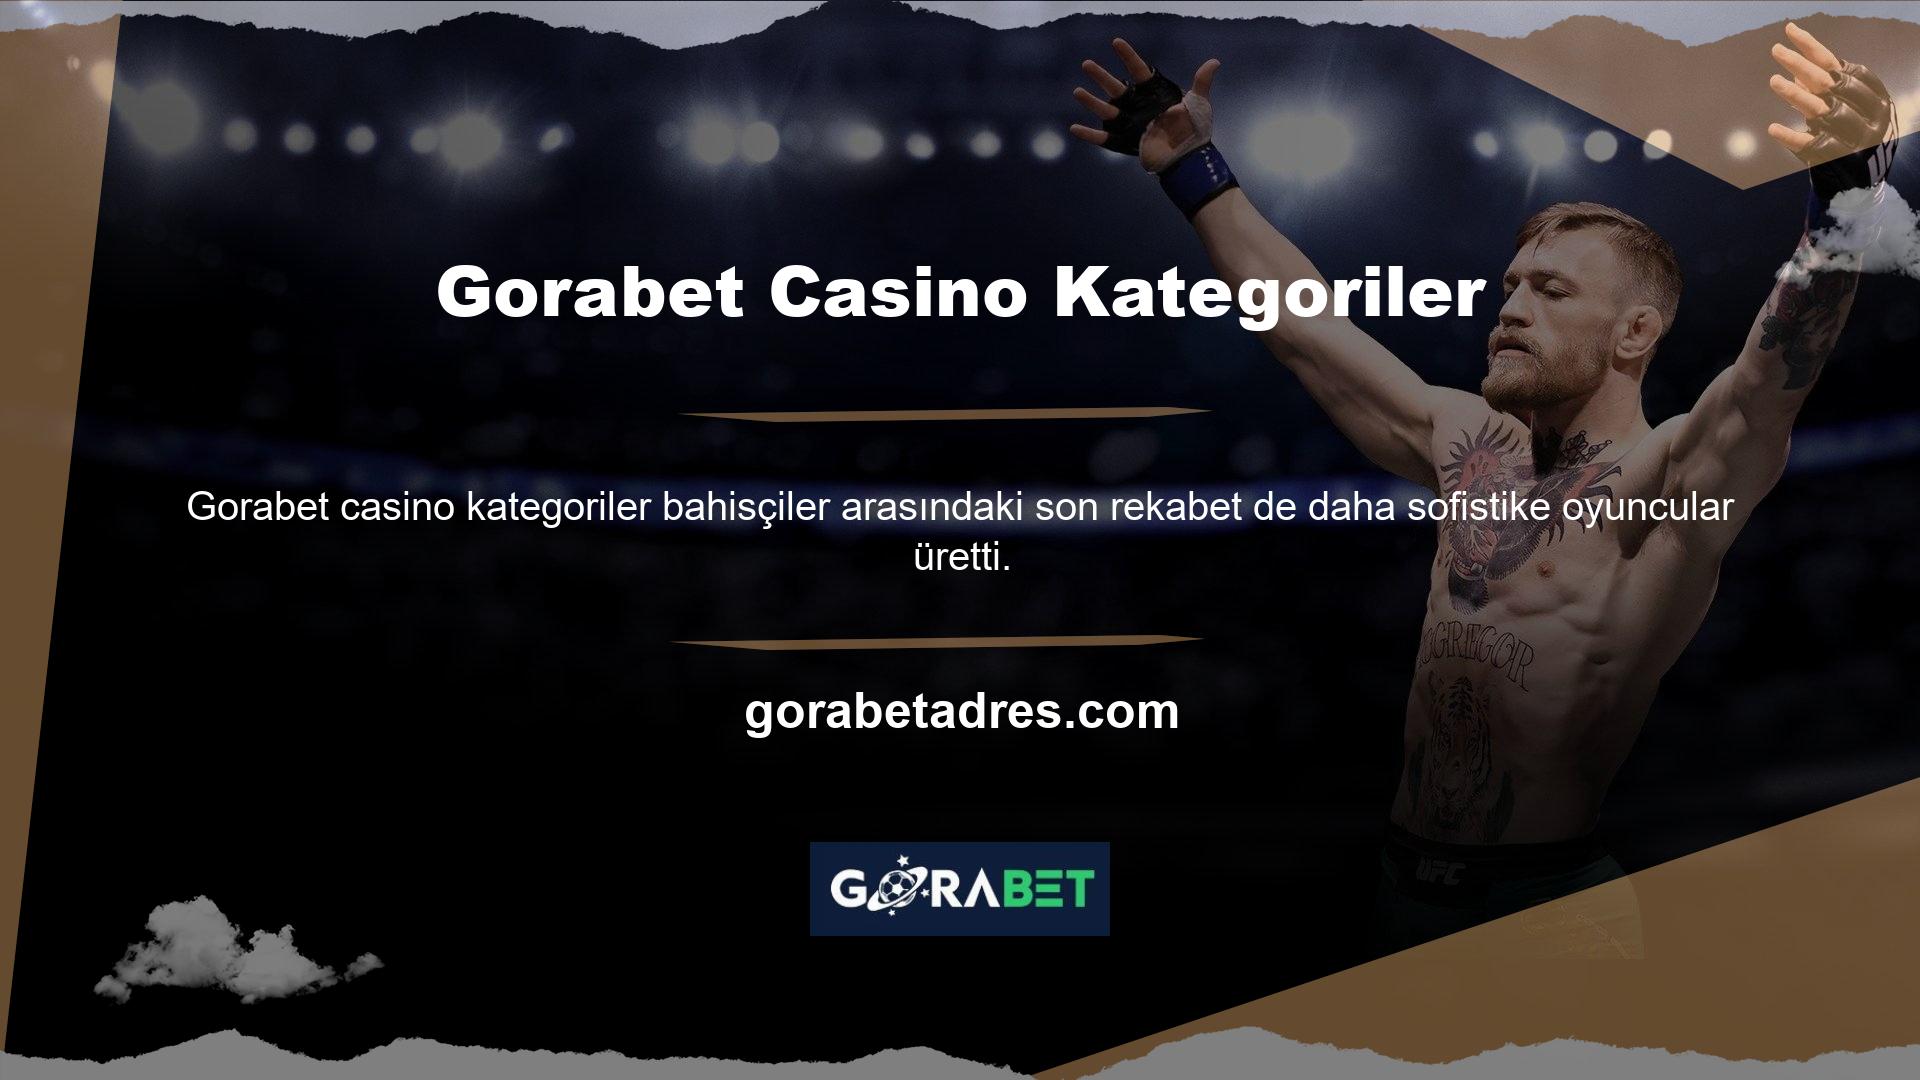 Gorabet casino kategoriler ülkemizde faaliyet gösteriyor olması, oyunculara hizmet veren Türk firması gibi diğer casino siteleri ile popülaritesini artırmıştır